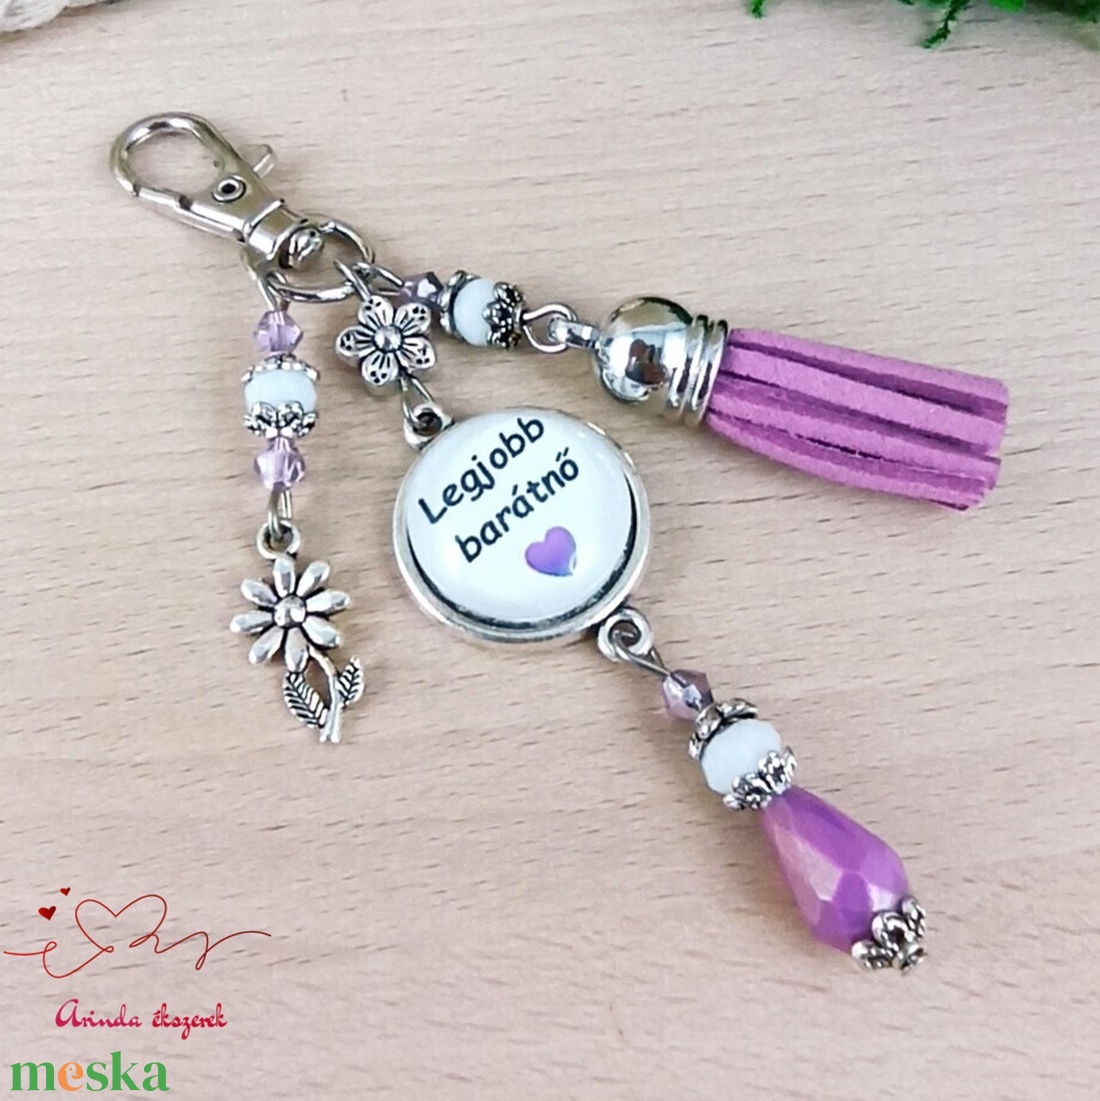 Legjobb barátnő feliratos lila bojtos üveglencsés kulcstartó táskadísz  - táska & tok - kulcstartó & táskadísz - kulcstartó - Meska.hu